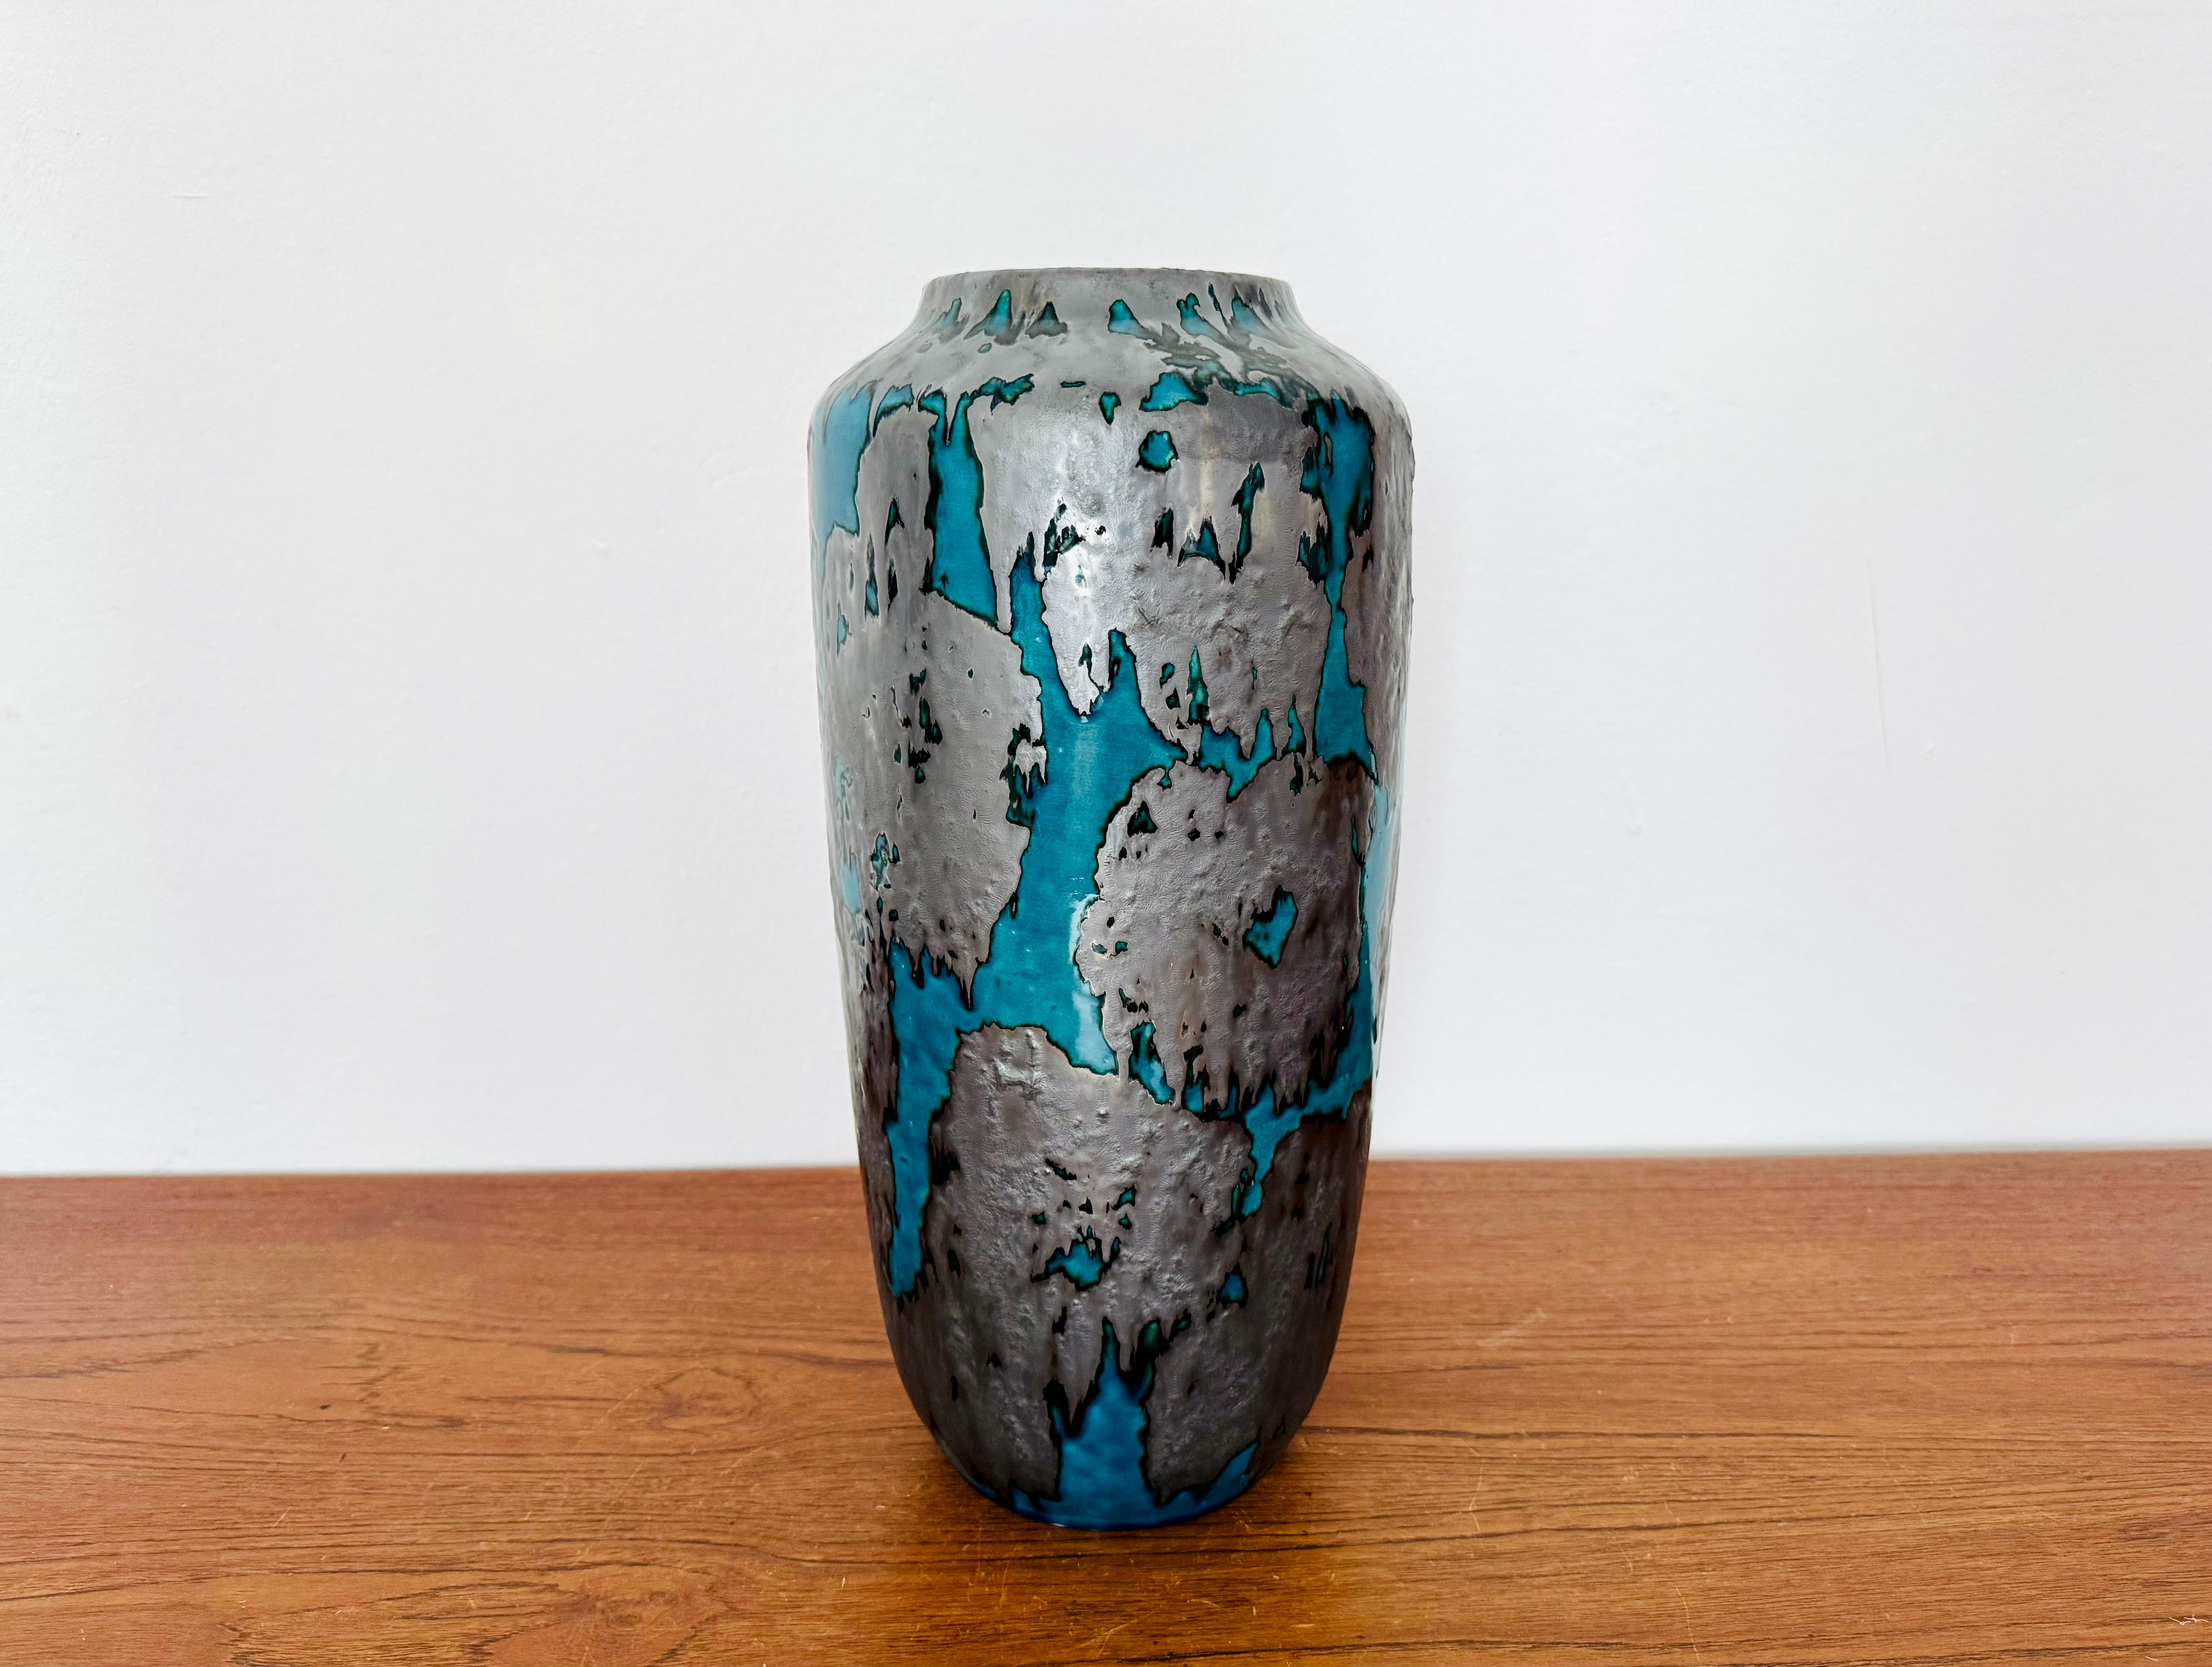 Très beau et inhabituel vase de sol en céramique des années 1960.
La combinaison des couleurs avec la glaçure bleu-vert et argent-noir est particulièrement réussie.
Un design magnifique et un objet en céramique spécial pour les